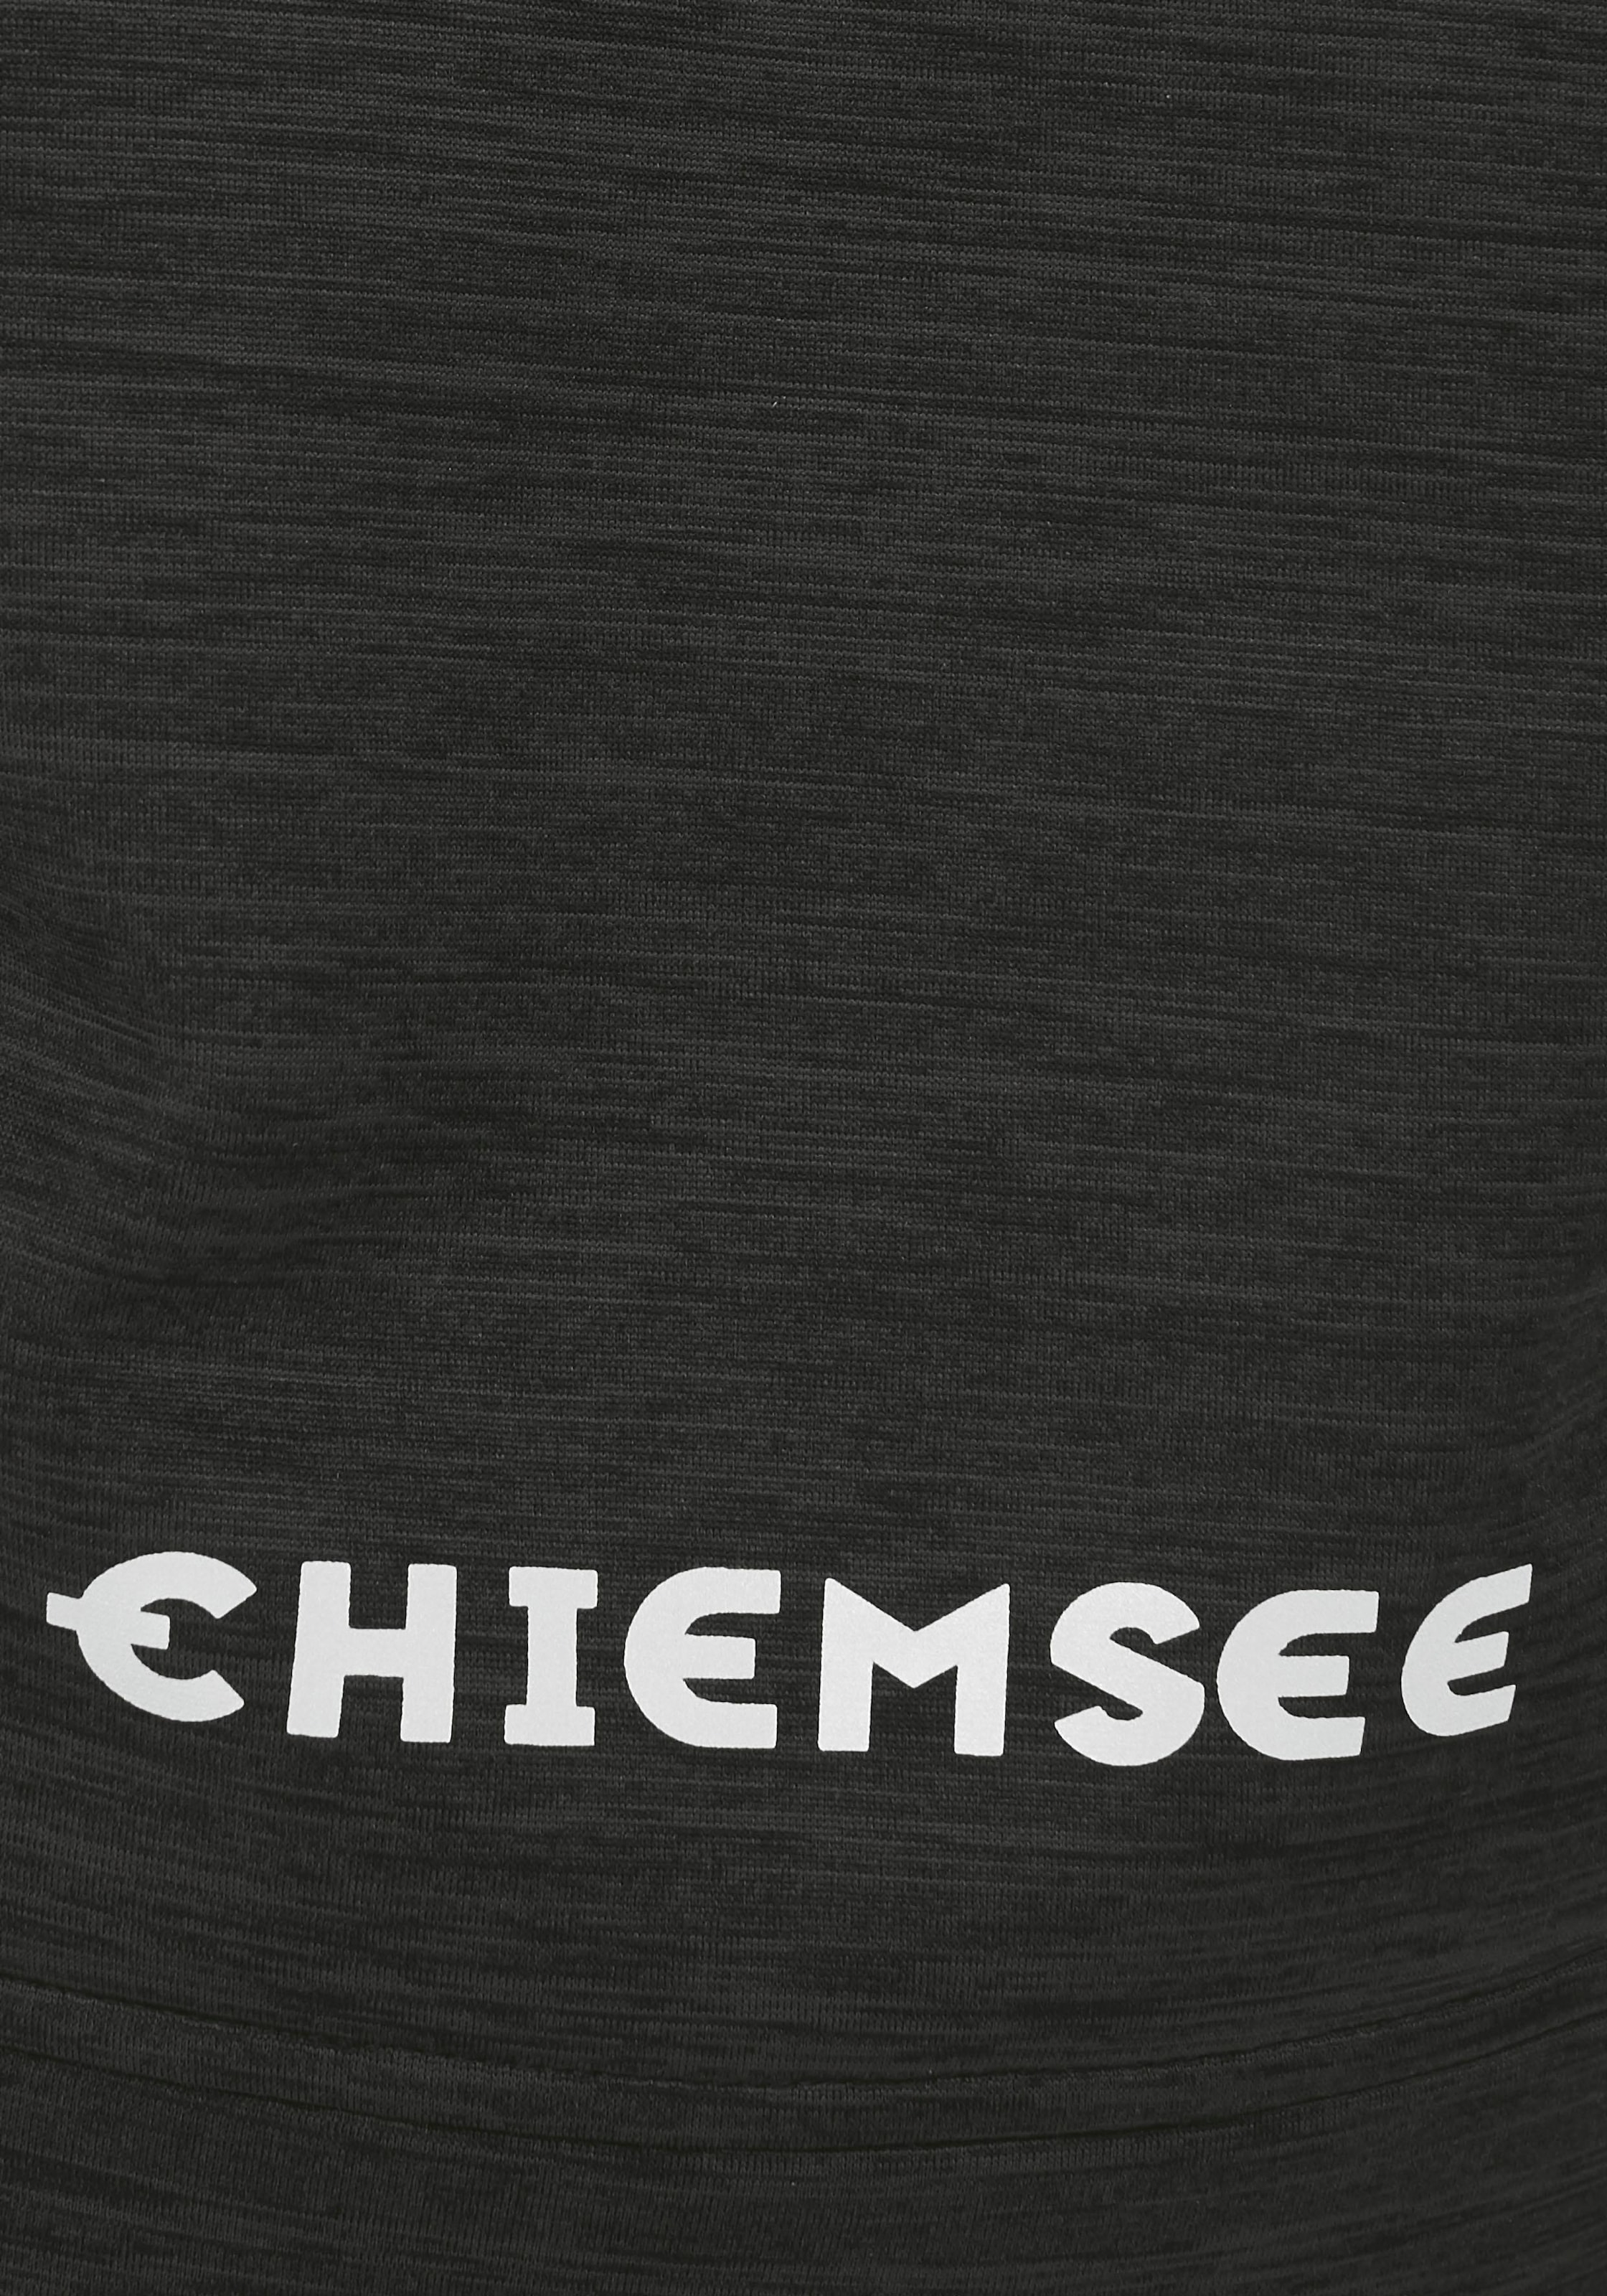 Chiemsee Softshelljacke, mit Kapuze, mit reflektierendem Druck